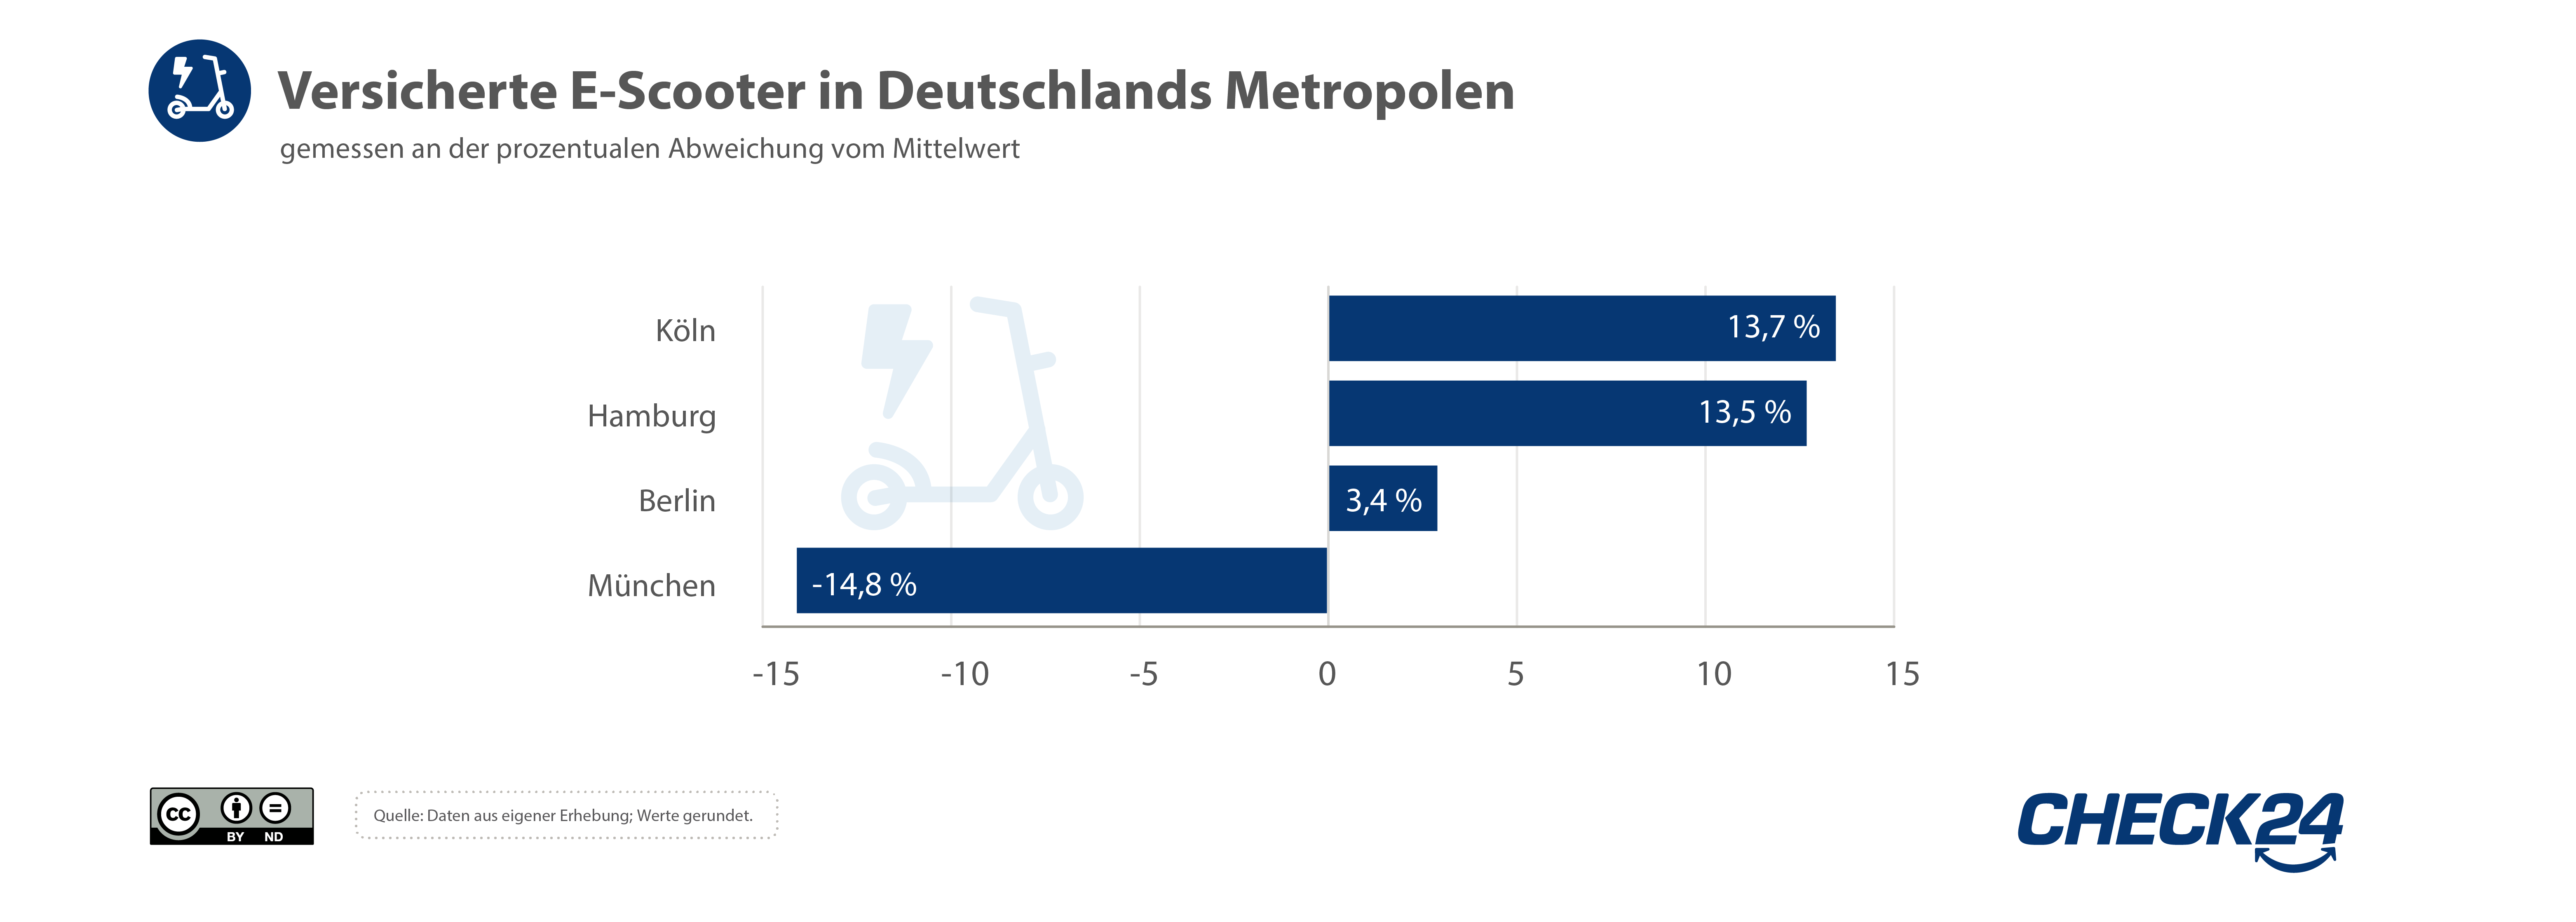 Balkendiagramm der versicherten E-Scooter in Deutschlands Metropolen.